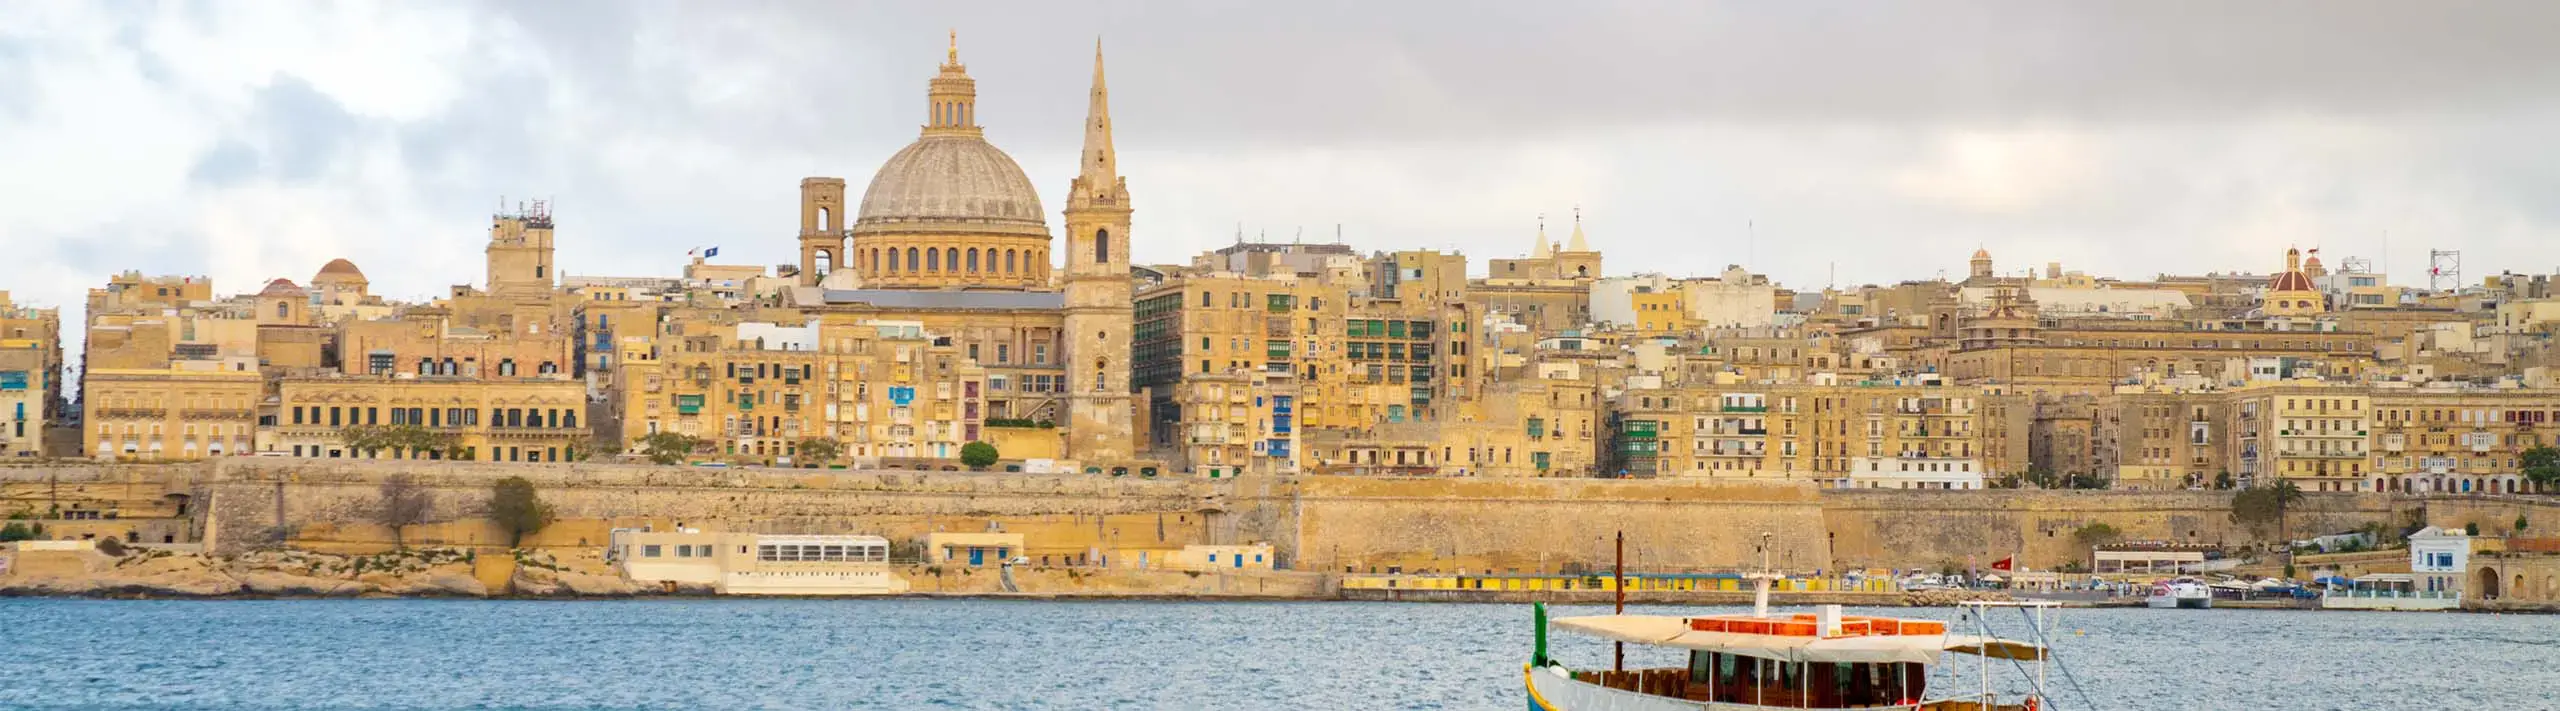 Valletta, the capital of Malta: